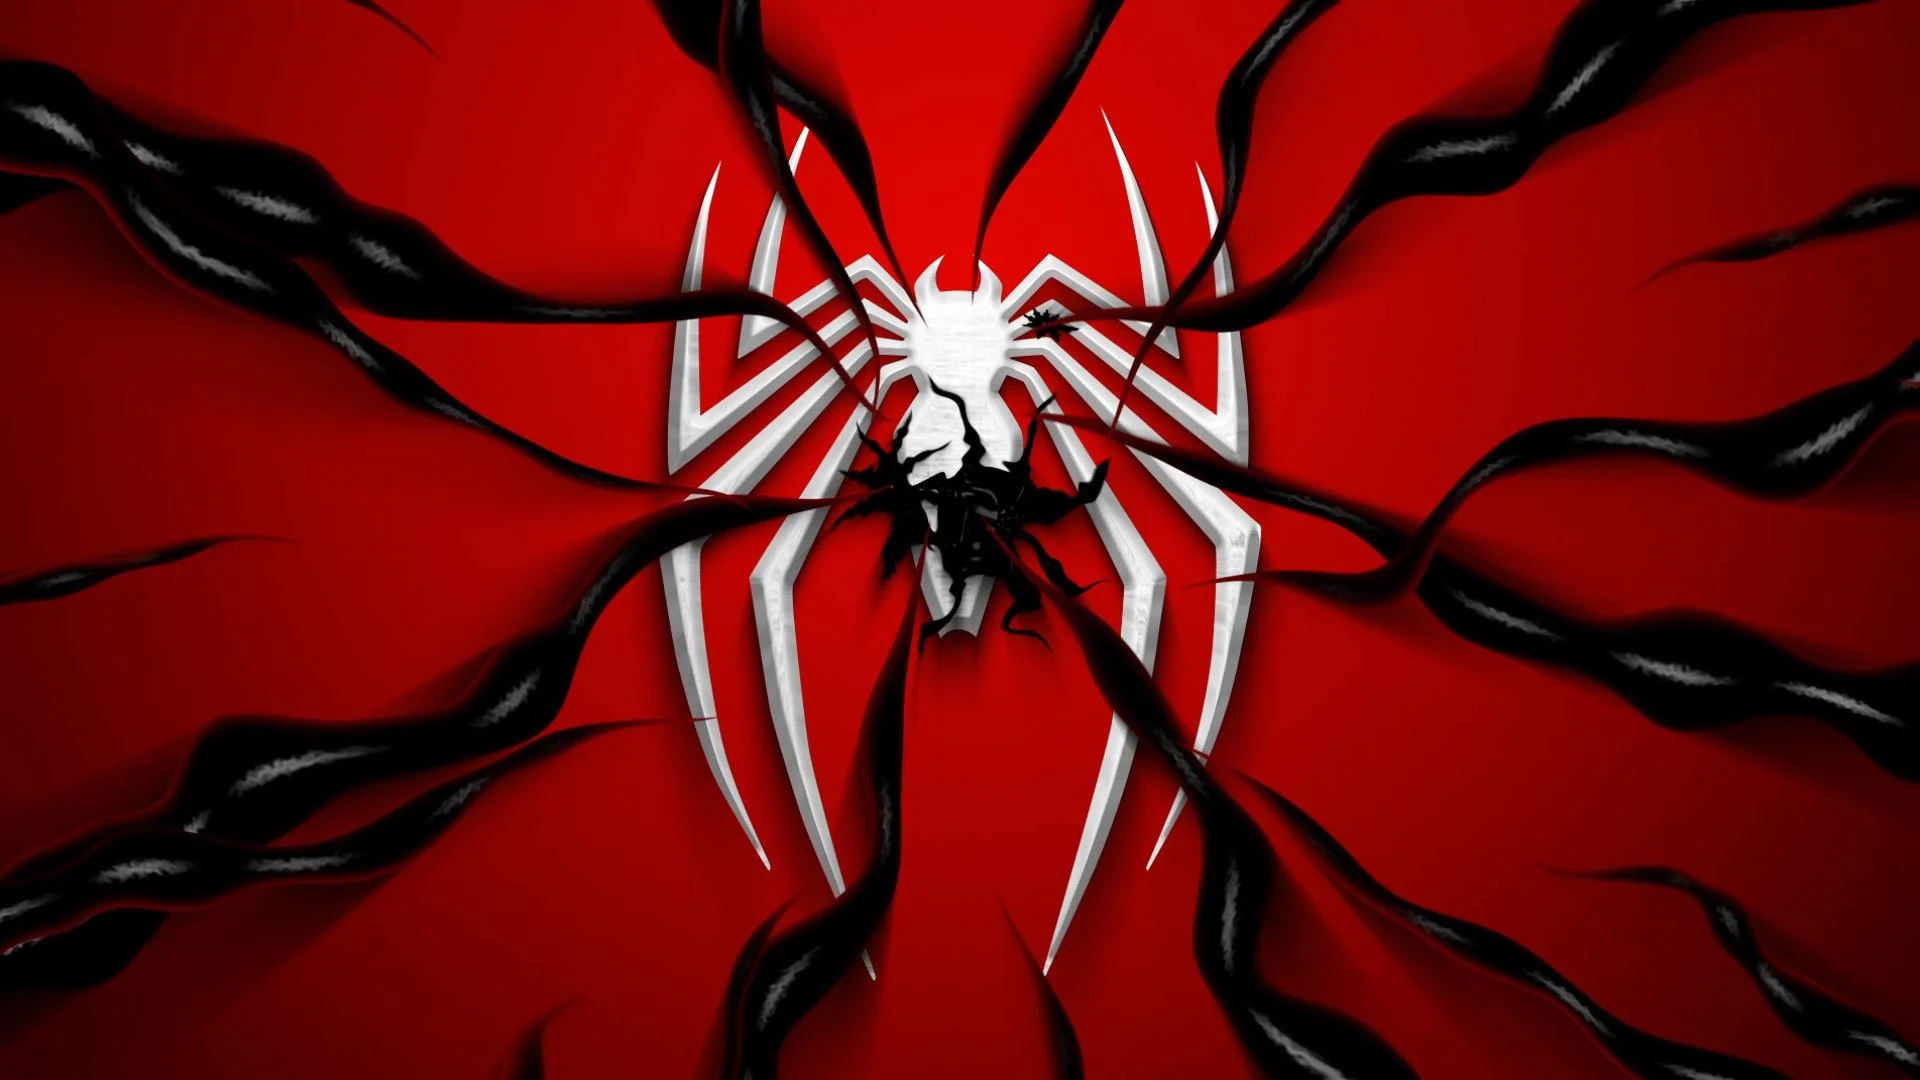 آموزش لوگوی مرد عنکبوتی 2 با الهام از بازی ویدیویی سونی پلی استیشن 5 با استفاده از Adobe After Effects آشکار شد.